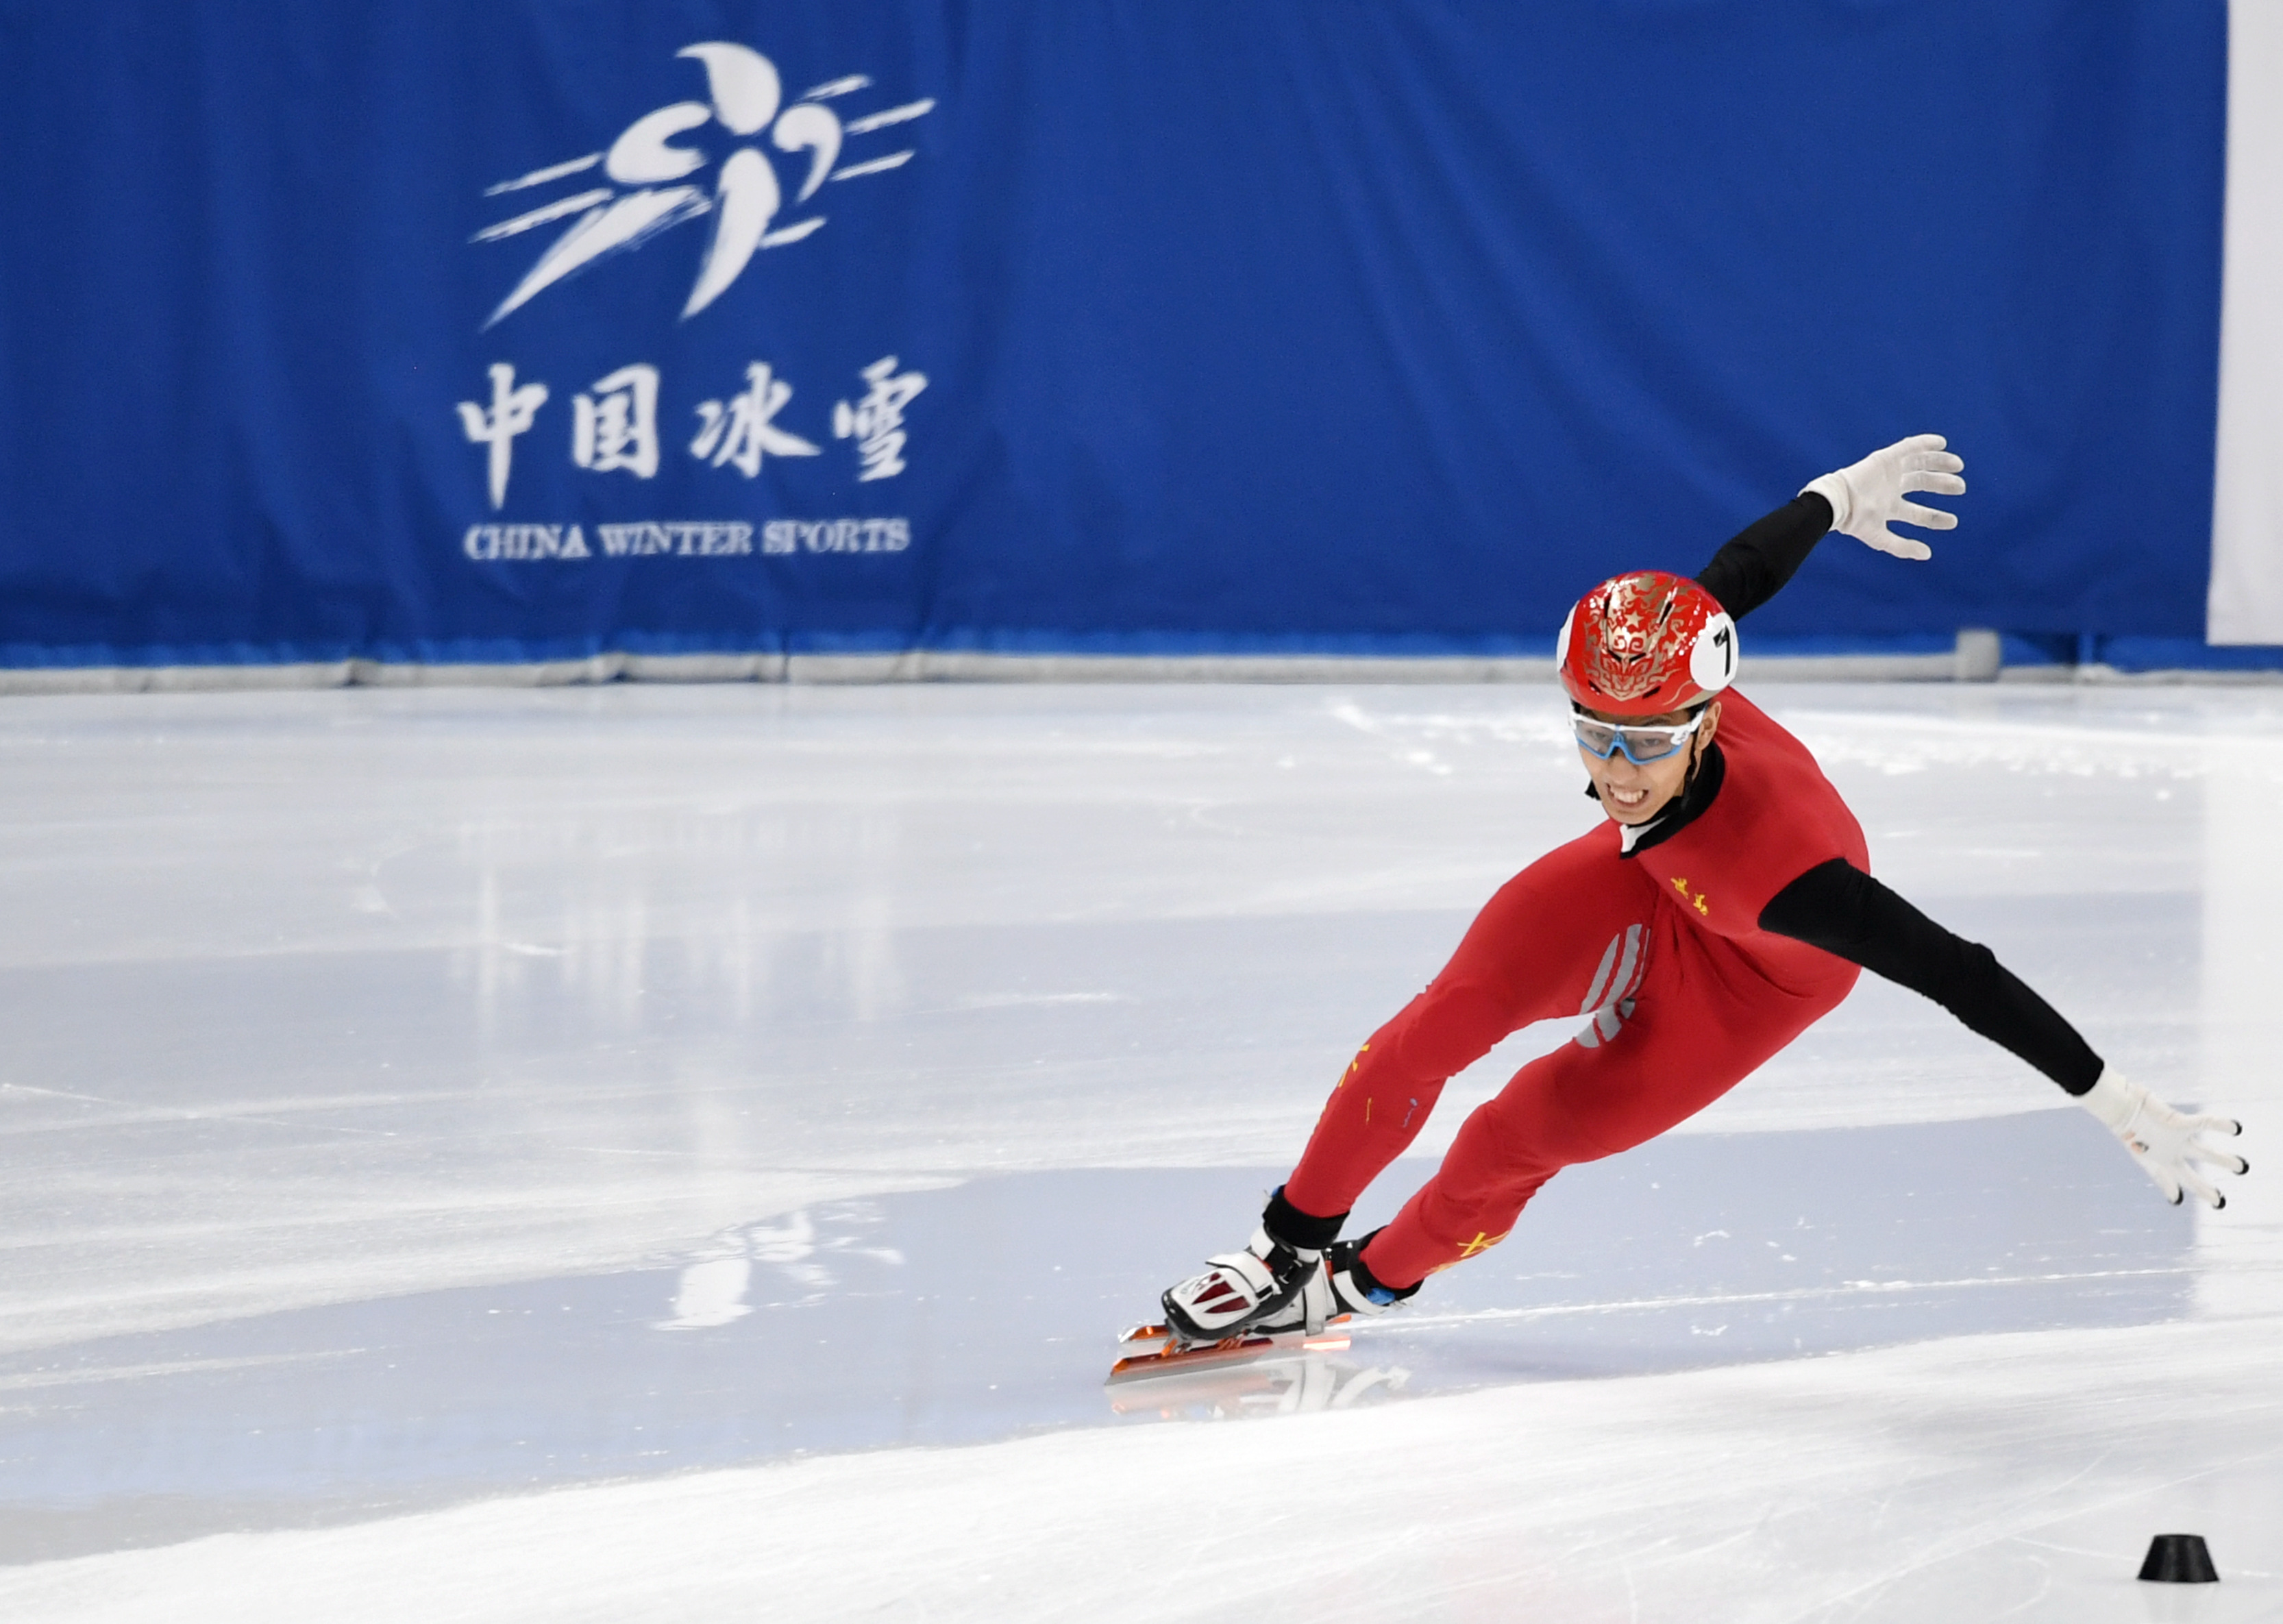 全国短道速滑冠军赛吉林名将孙龙连夺1500米、500米项目冠军